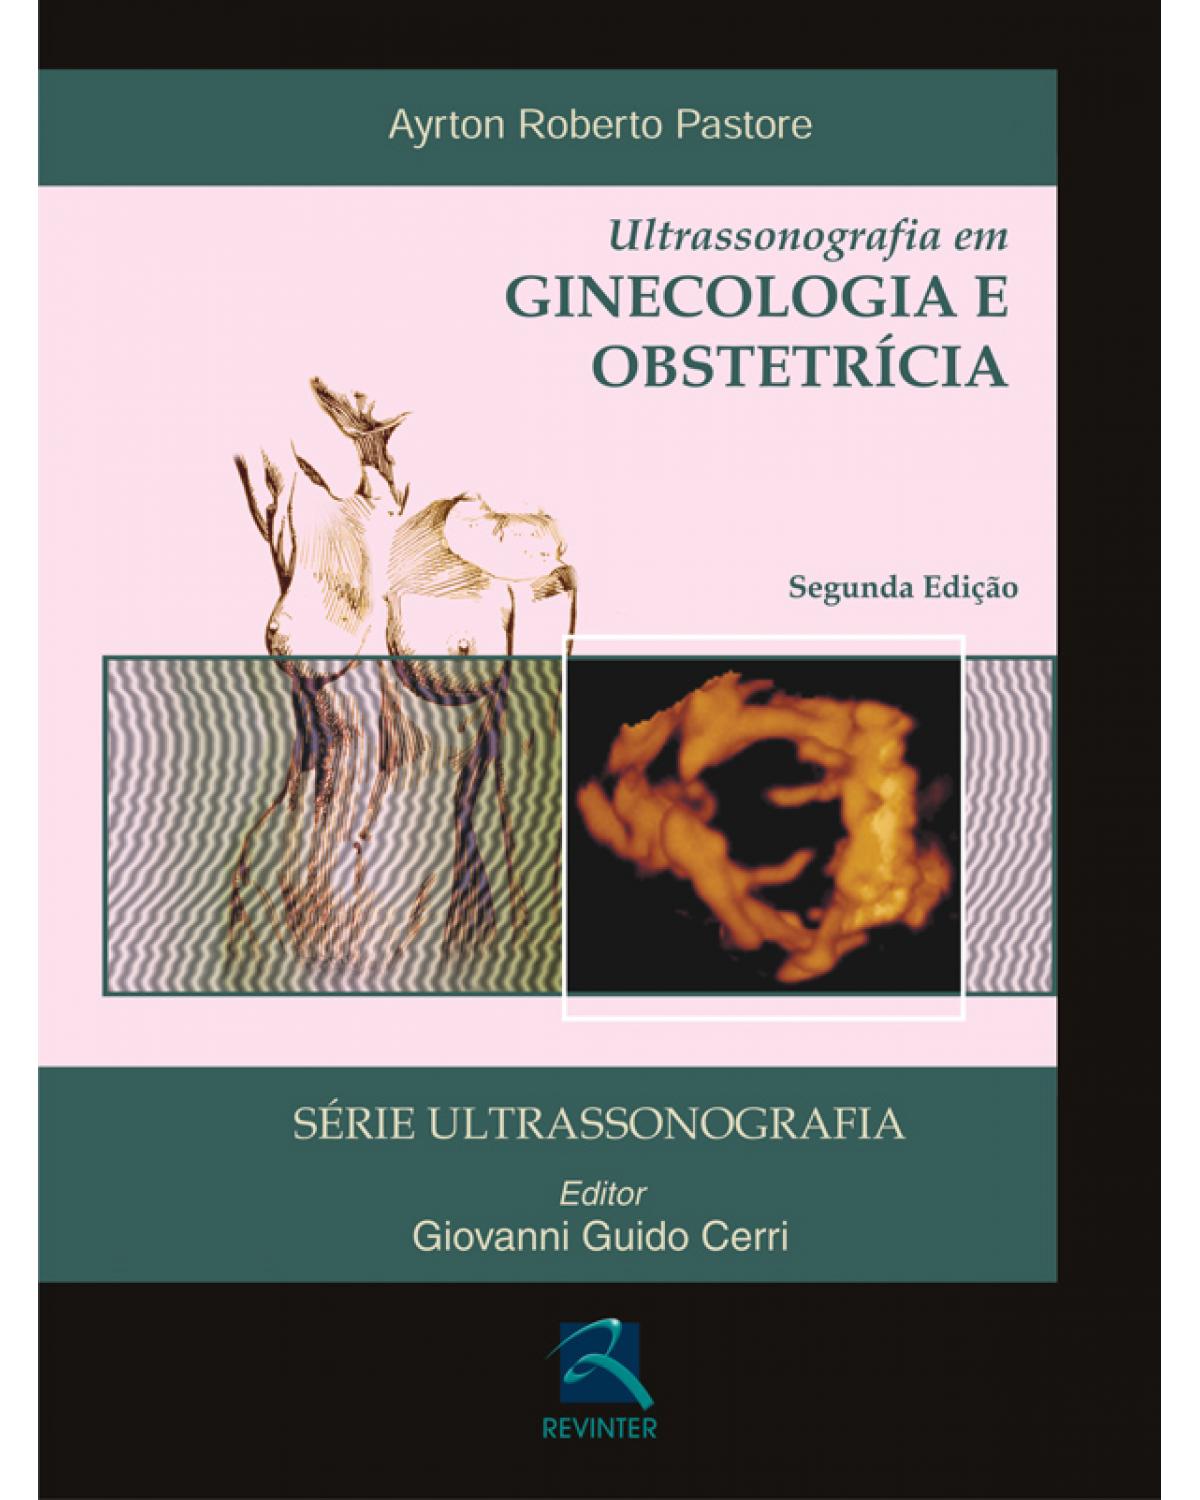 Ultrassonografia em ginecologia e obstetrícia - 2ª Edição | 2010